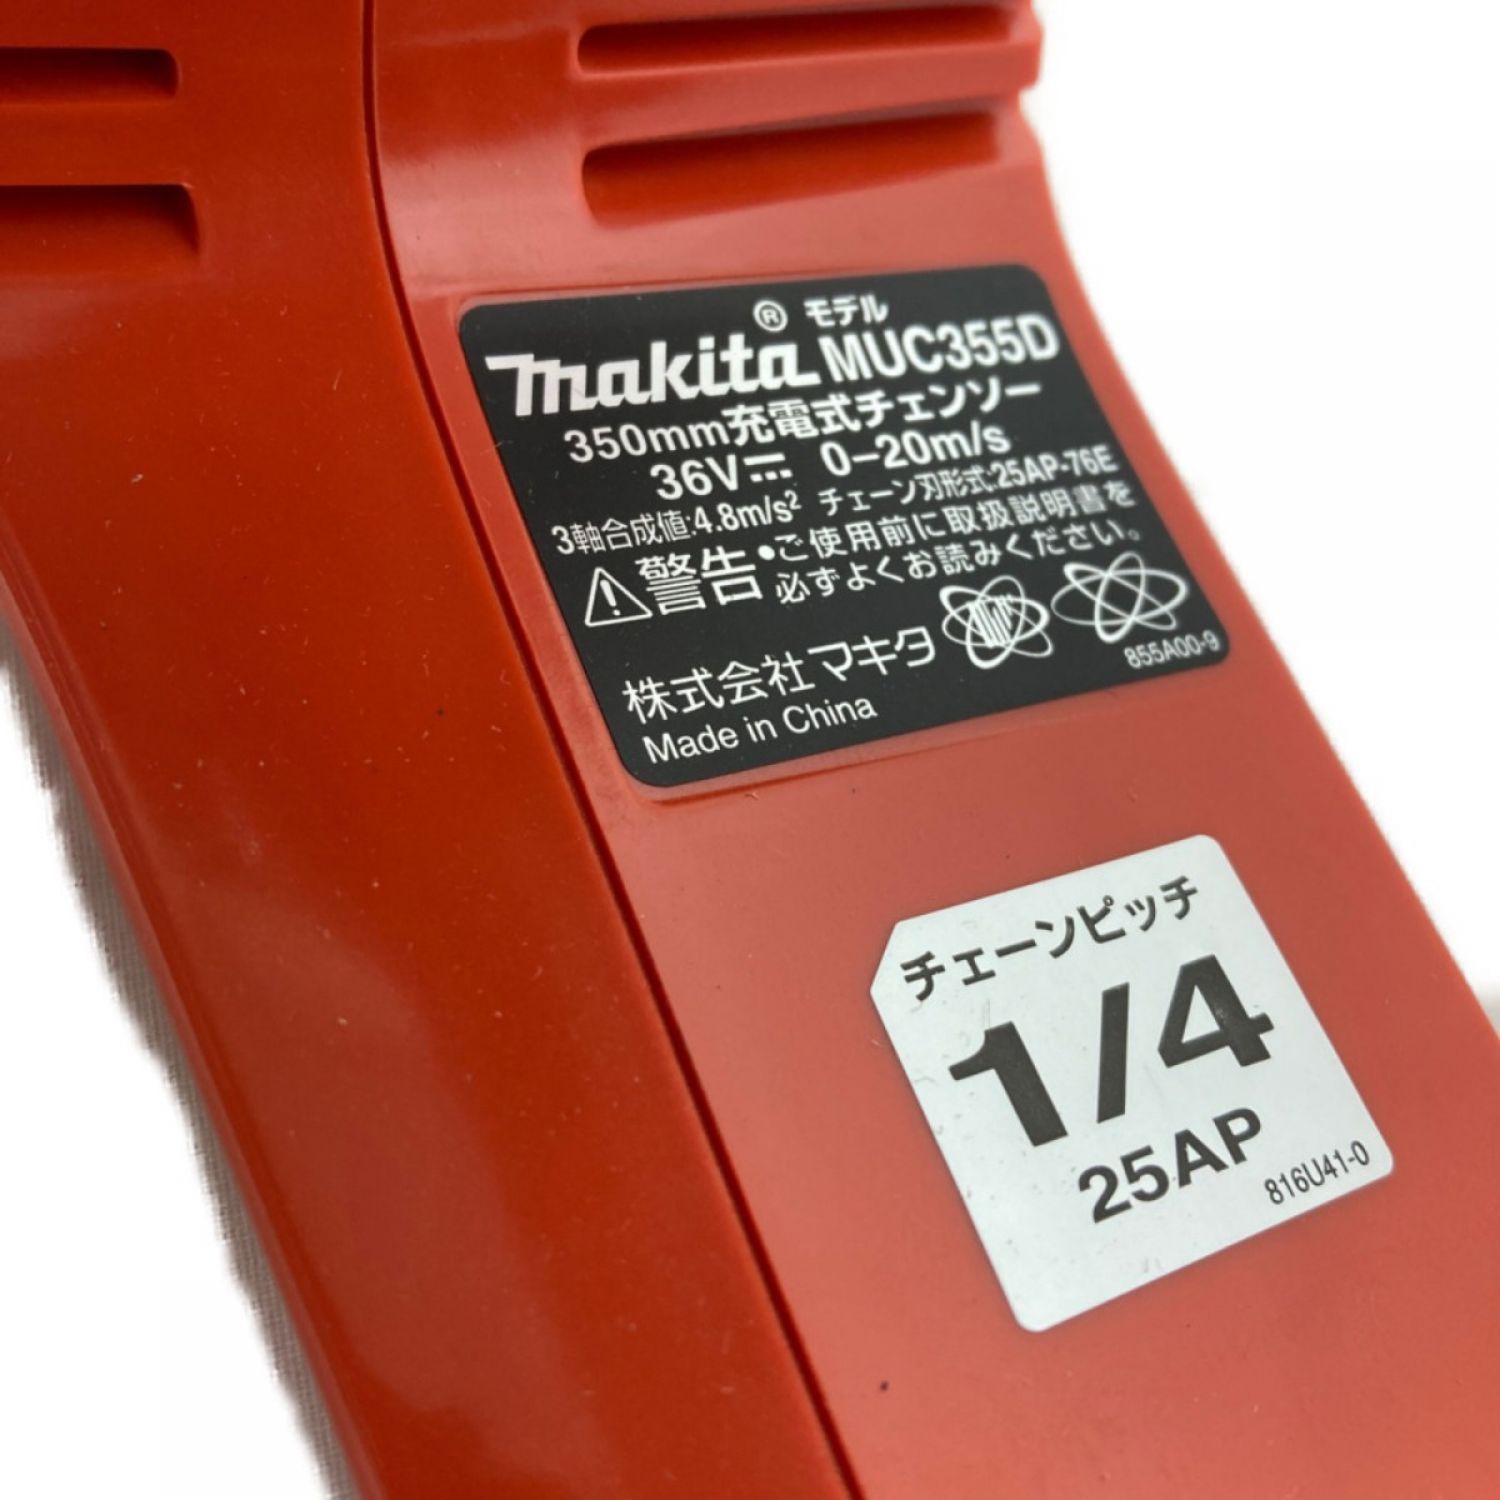 マキタ 充電式チェンソー MUC355DGFR バッテリ・充電器付き - 5